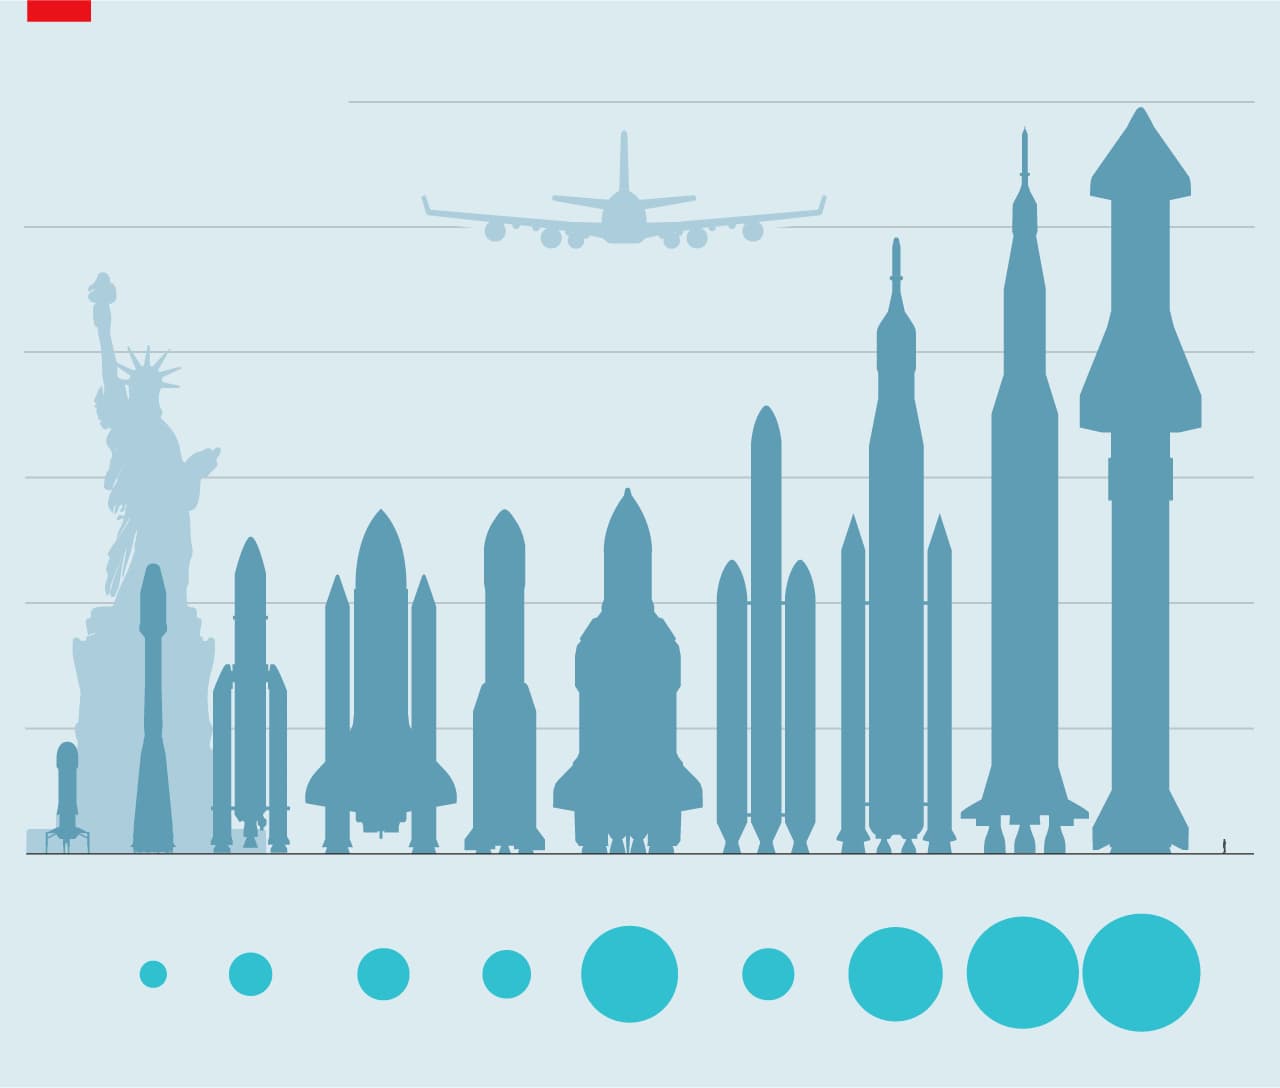 図表1: ロケットのサイズと搭乗可能な人数